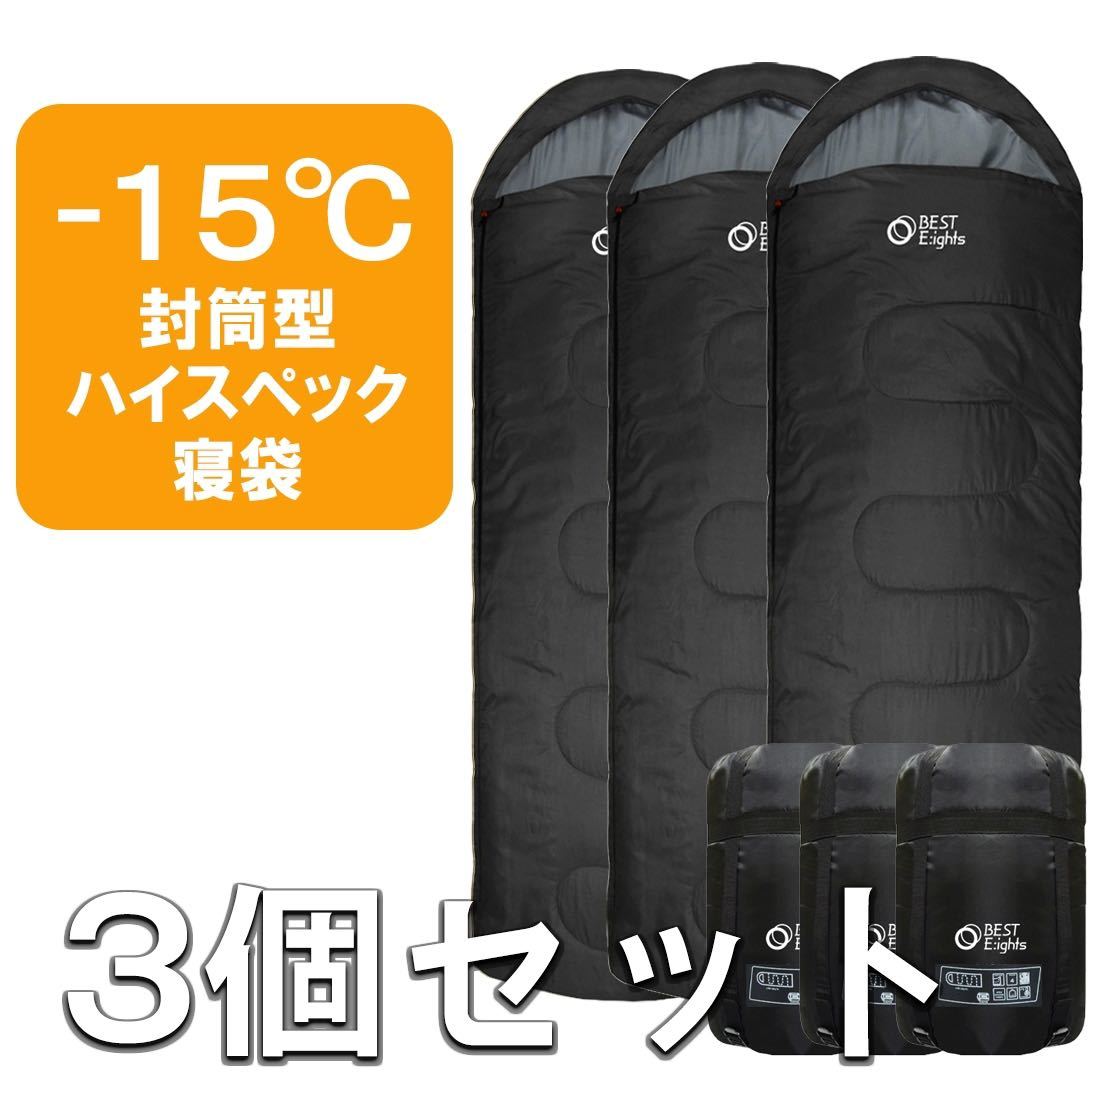 新品 寝袋 シュラフ ハイスペック コンパクト 封筒型 3個セット 最低使用温度-15℃